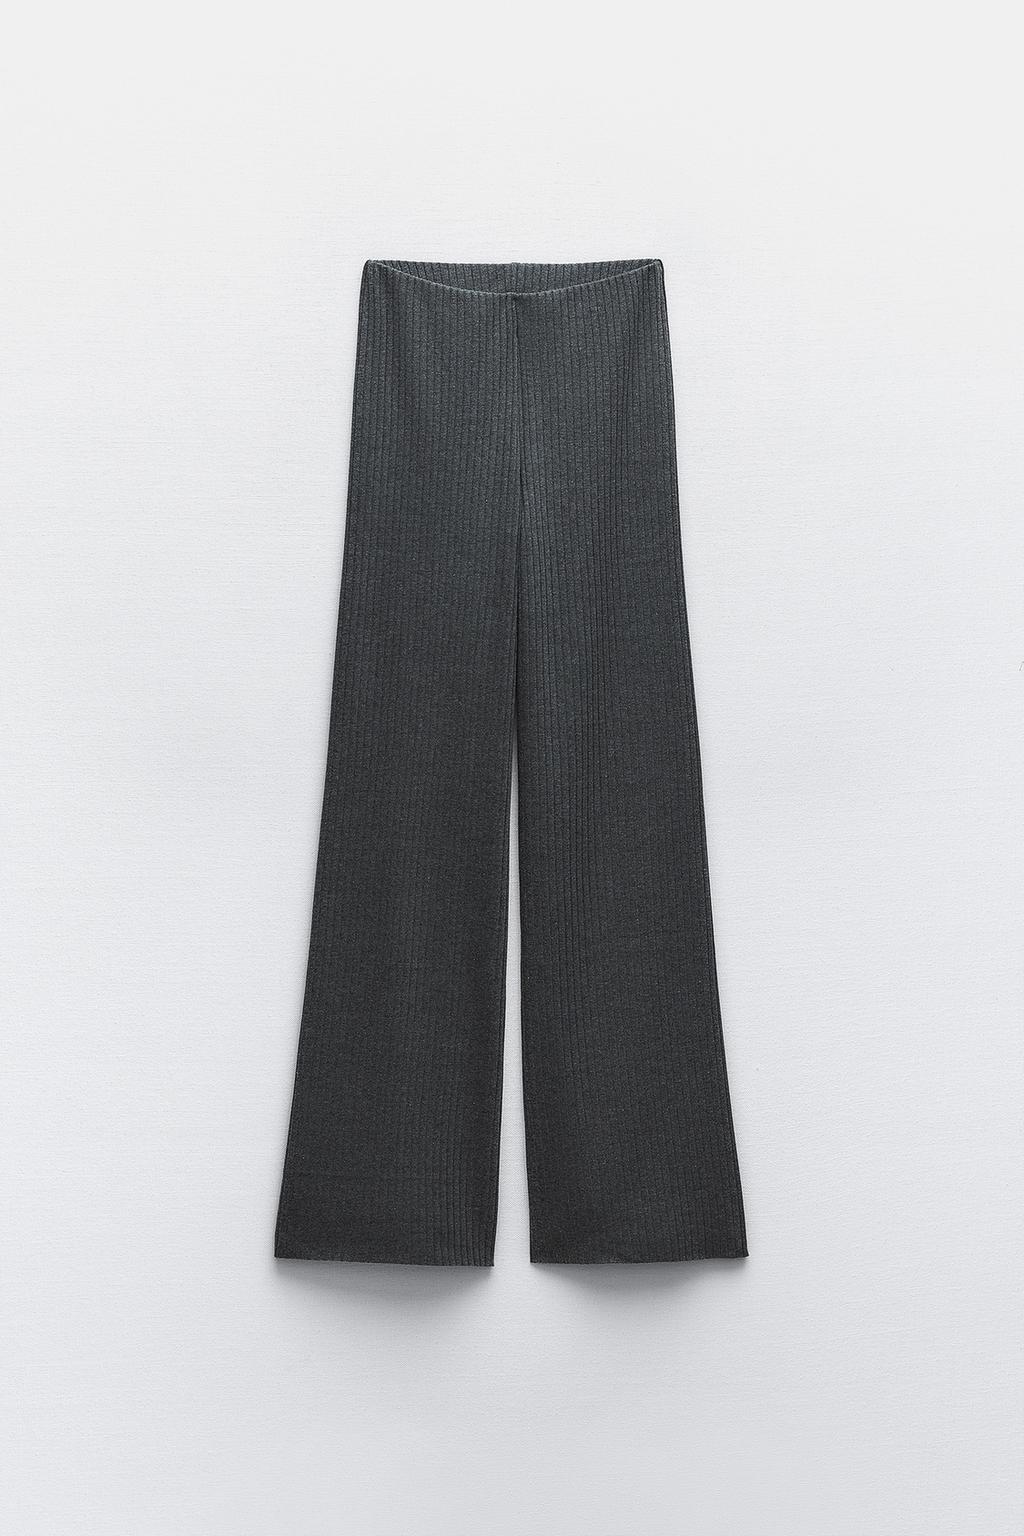 Широкие брюки в ребрику ZARA, серый мергель широкие брюки в рубчик zara серый мергель